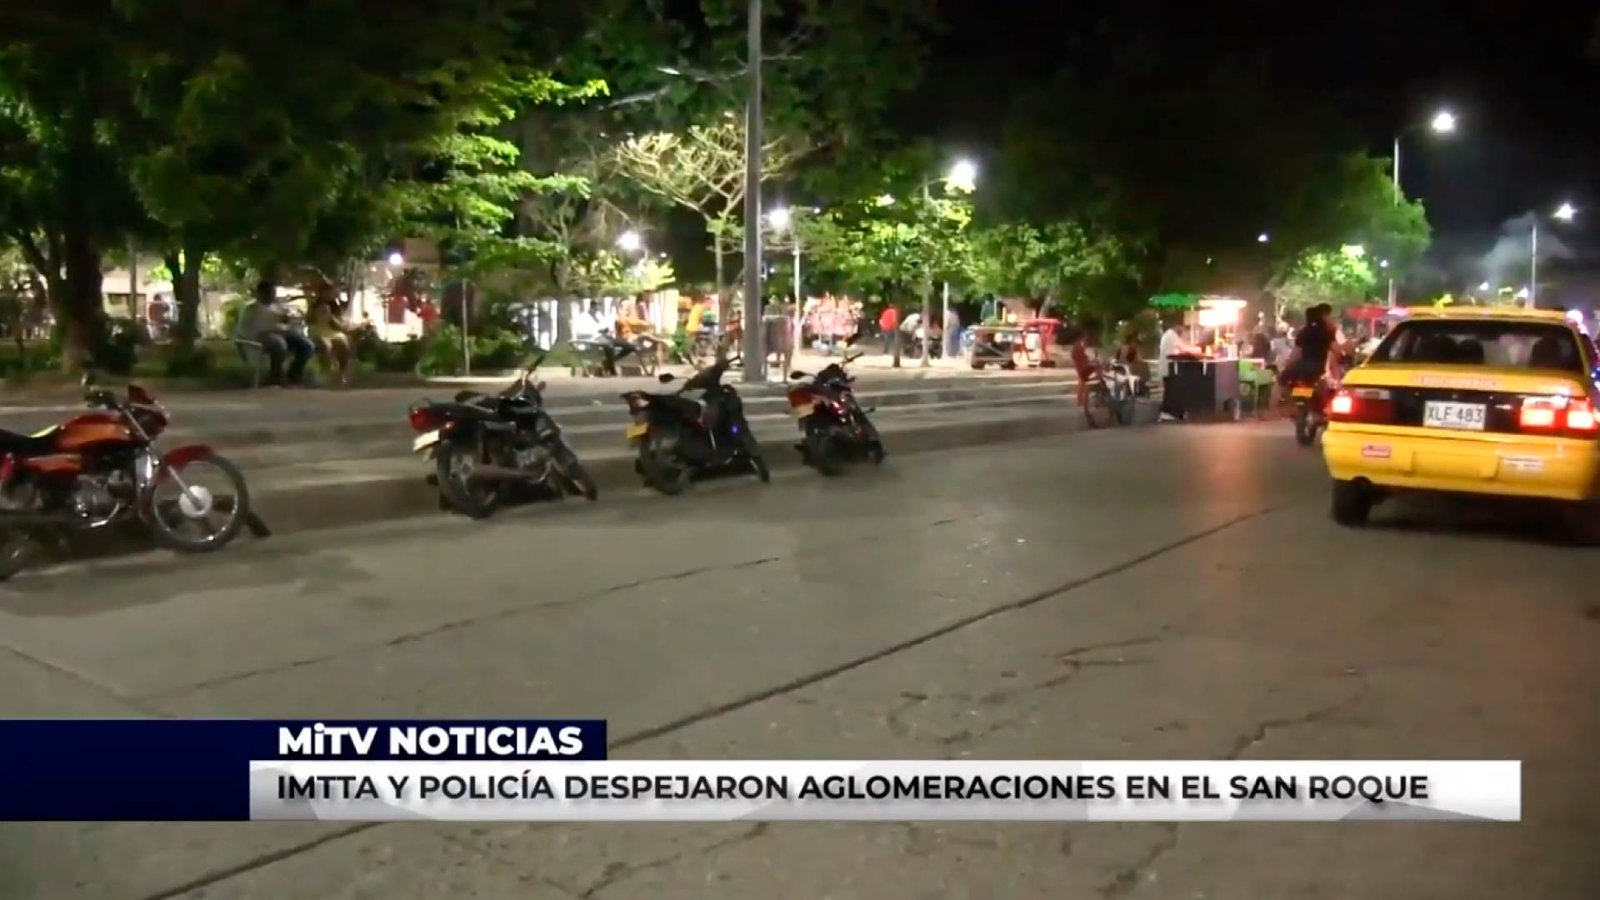 IMTTA Y POLICÍA DESPEJARON AGLOMERACIONES EN EL SAN ROQUE